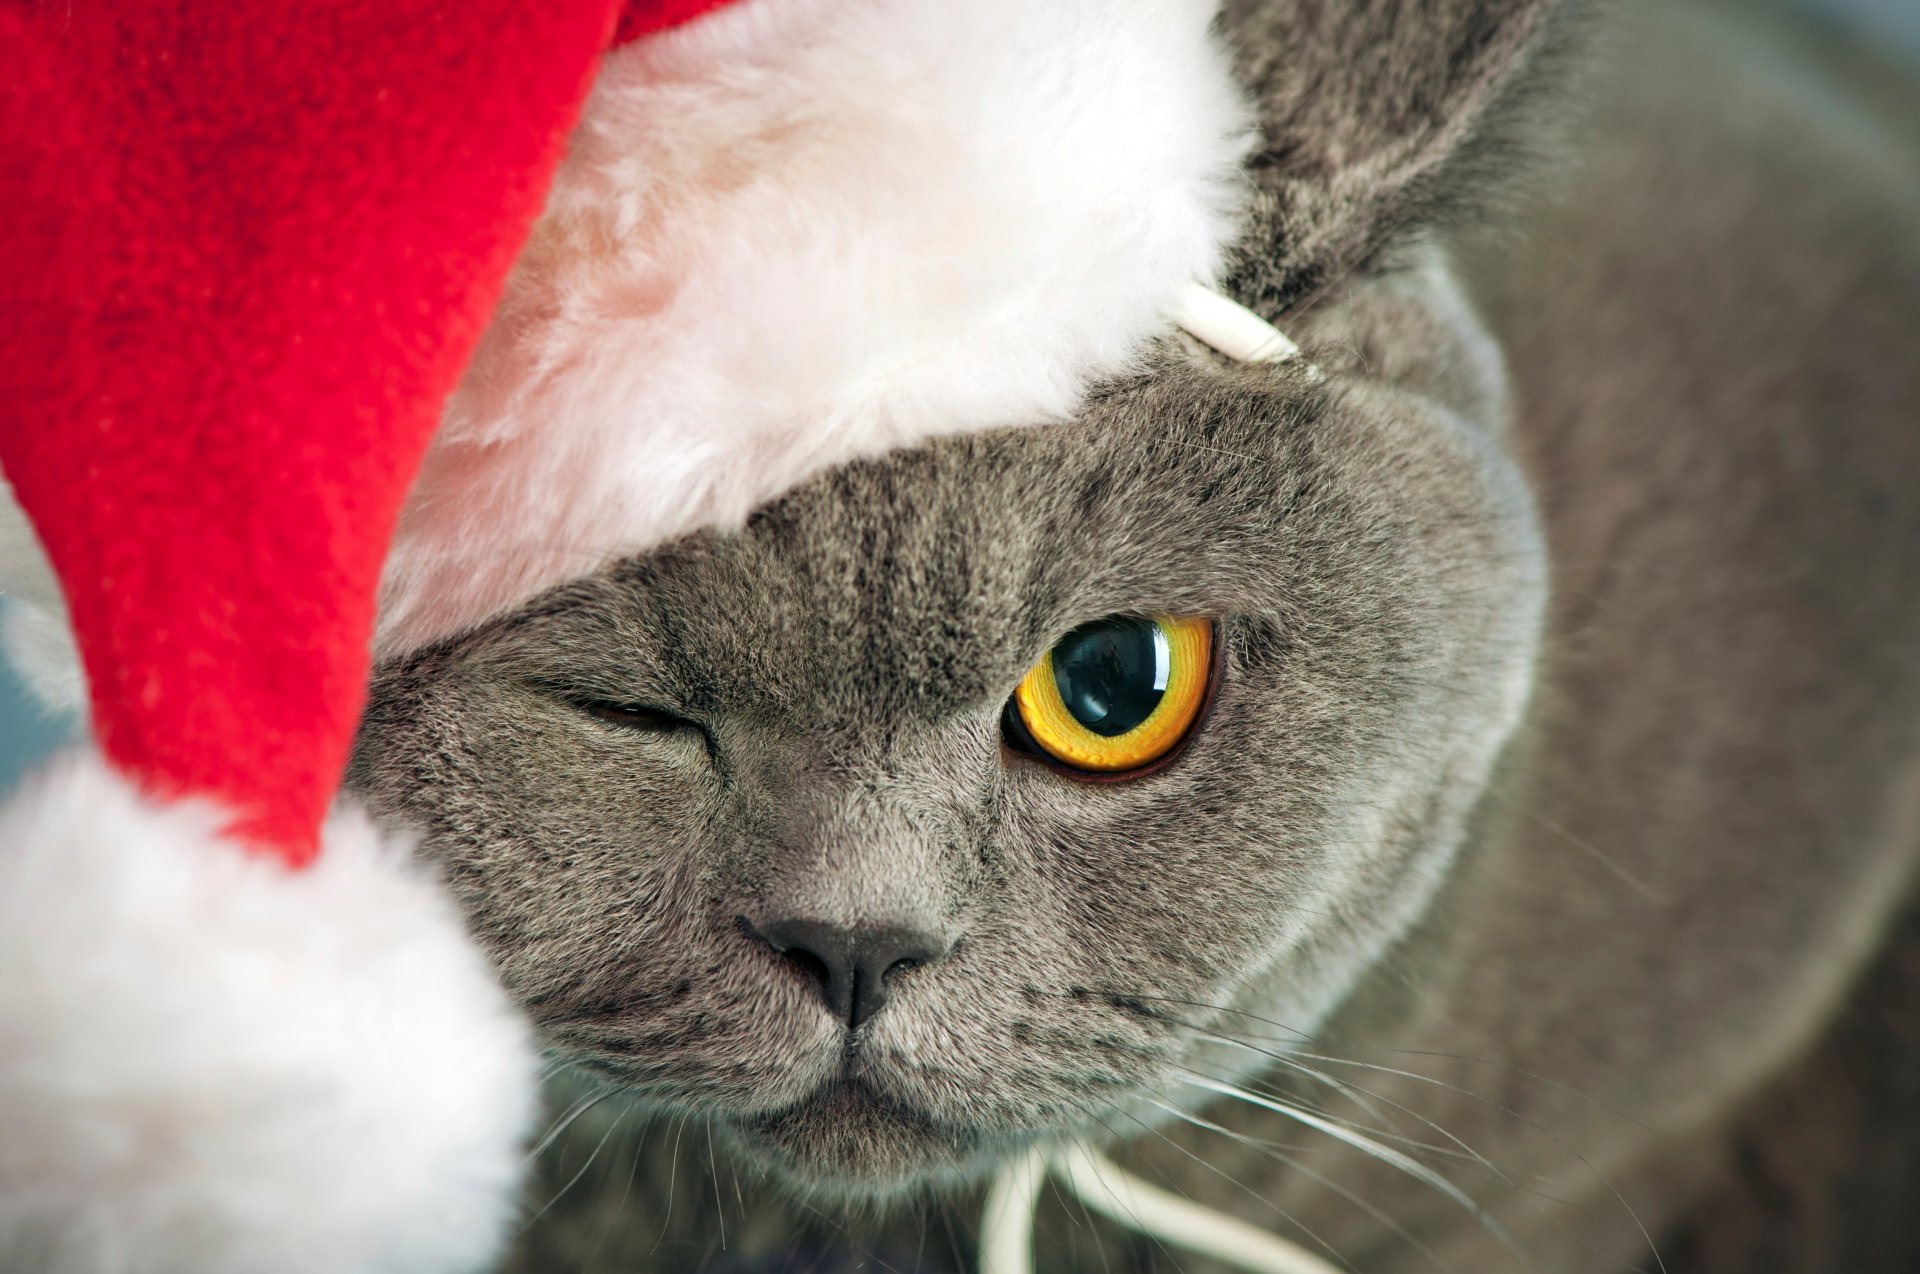 кот серый кошка британец глаз желтый щурится морда шапка красная новогодняя новый год